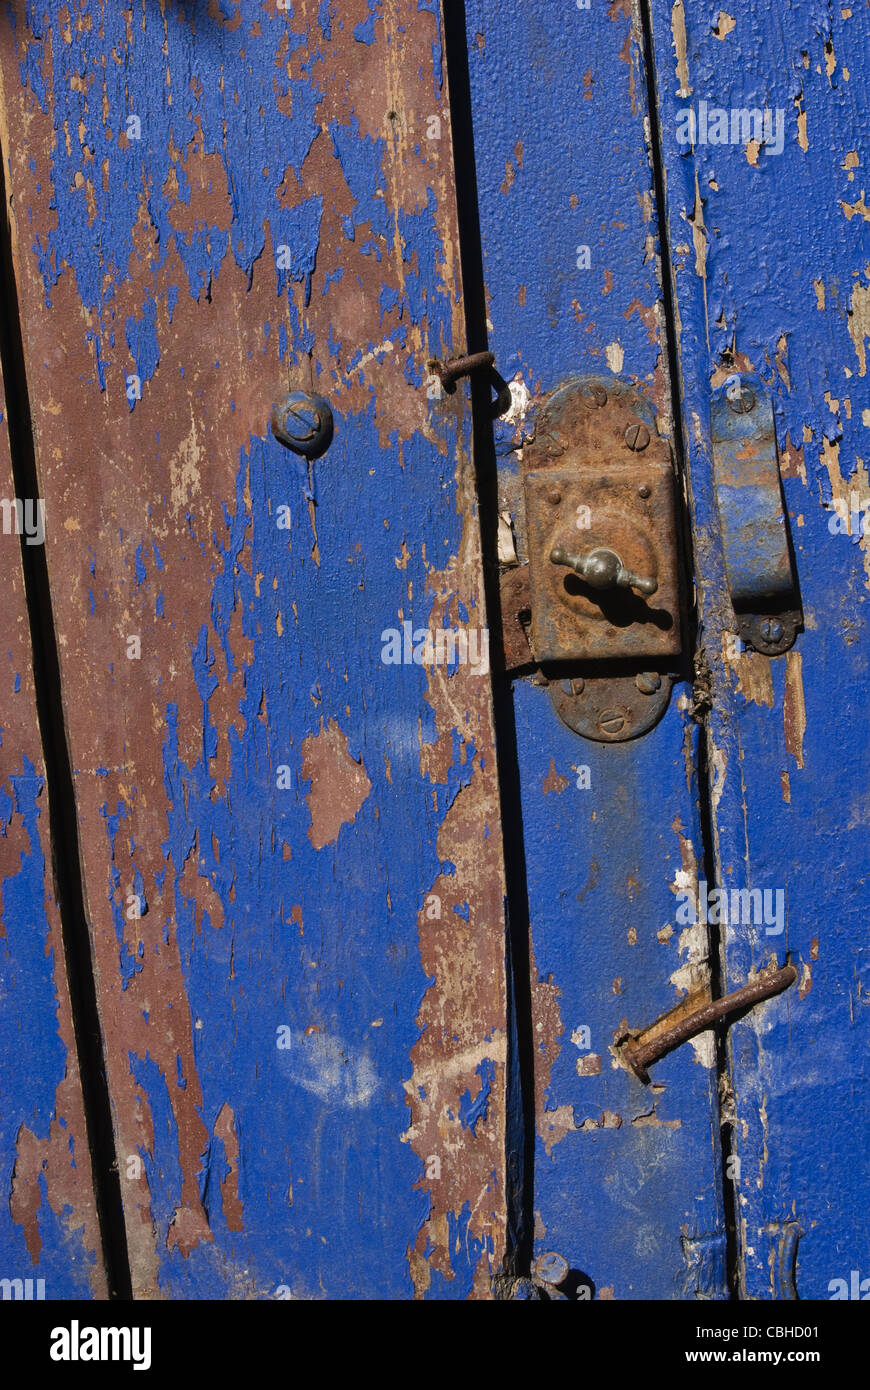 En bois Vintage porte bleue close up. Utile comme arrière-plan pour les travaux de conception. Banque D'Images